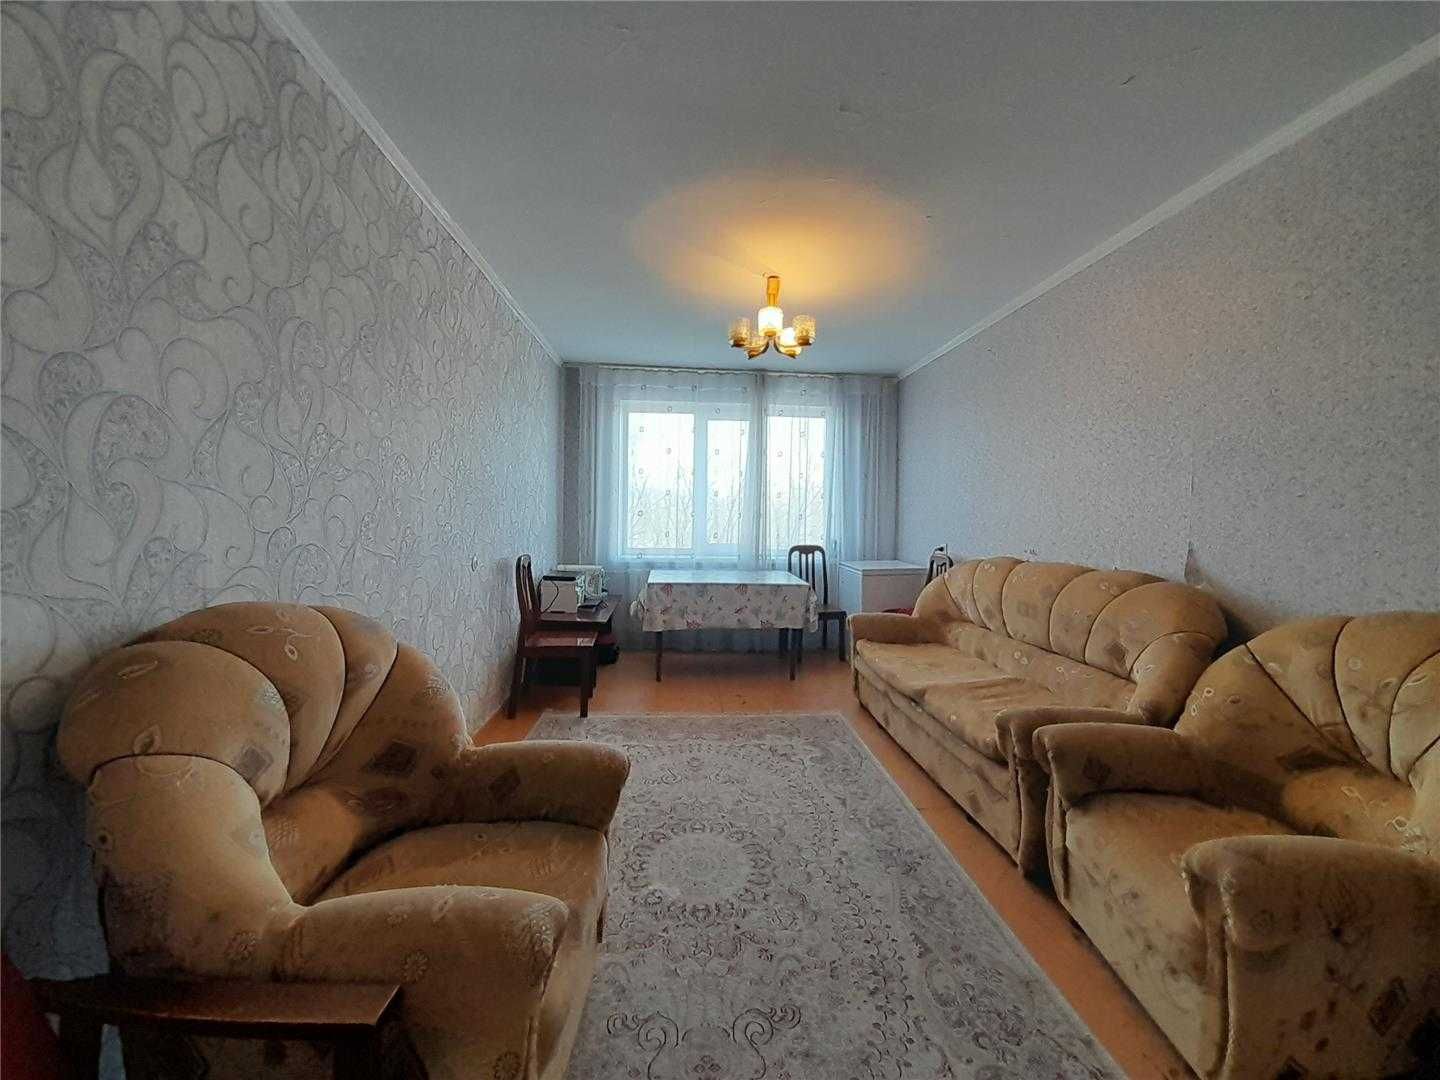 Продам 2 комн квартиру улучшенной планировки по пр Металлургов